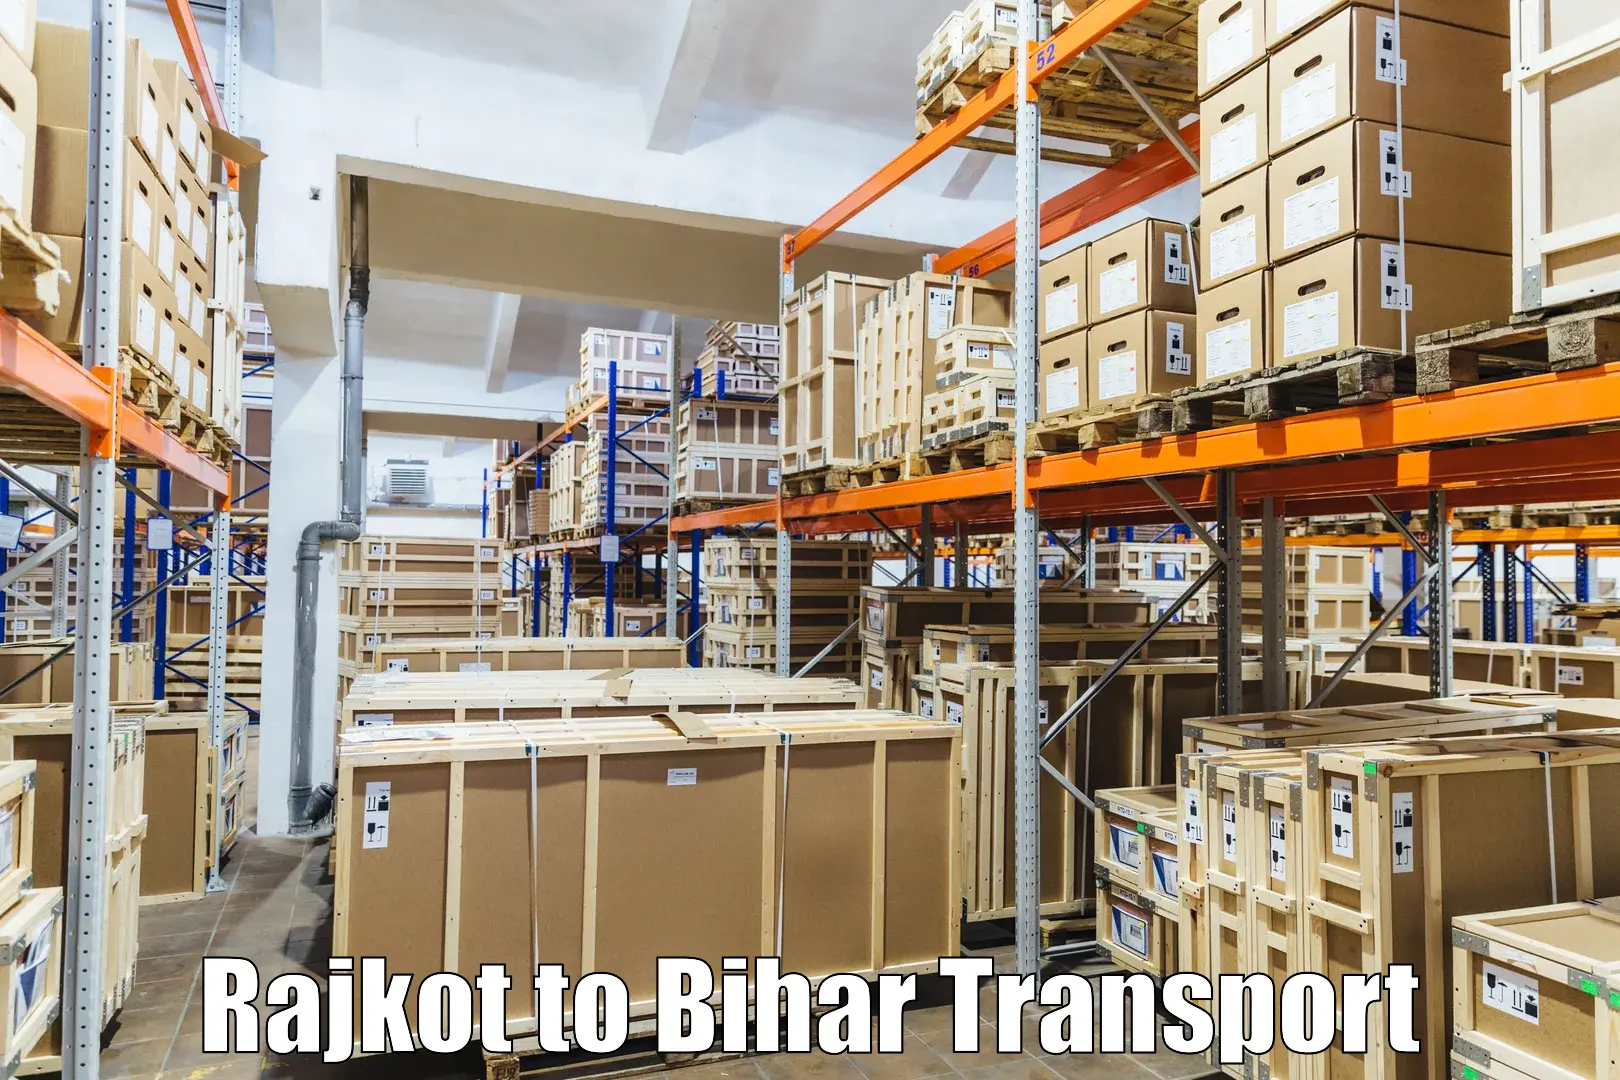 India truck logistics services Rajkot to Hajipur